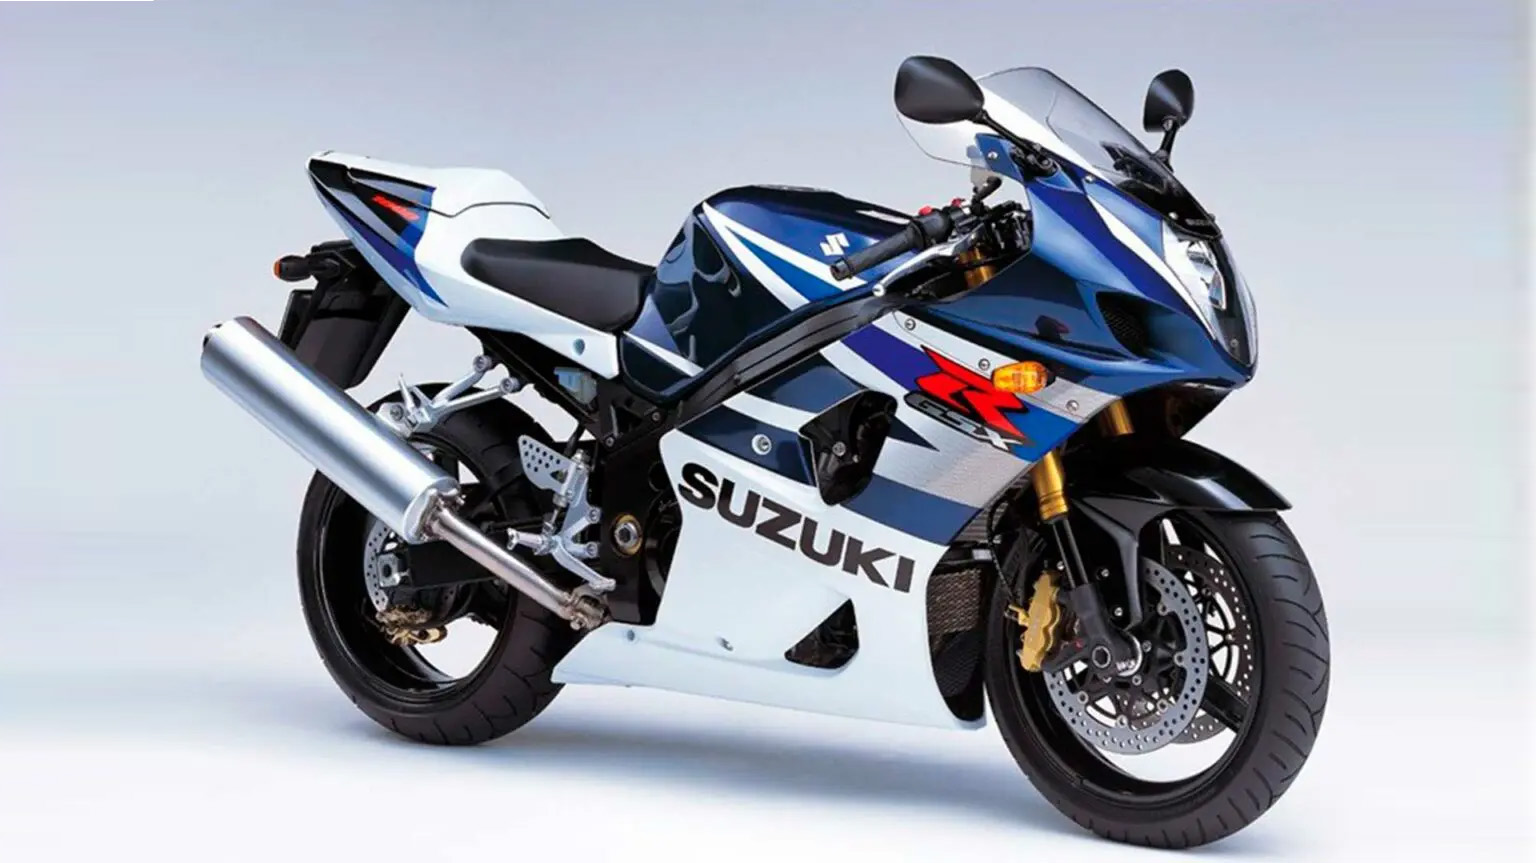 Suzuki celebra el 20 aniversario de una de sus motos más míticas